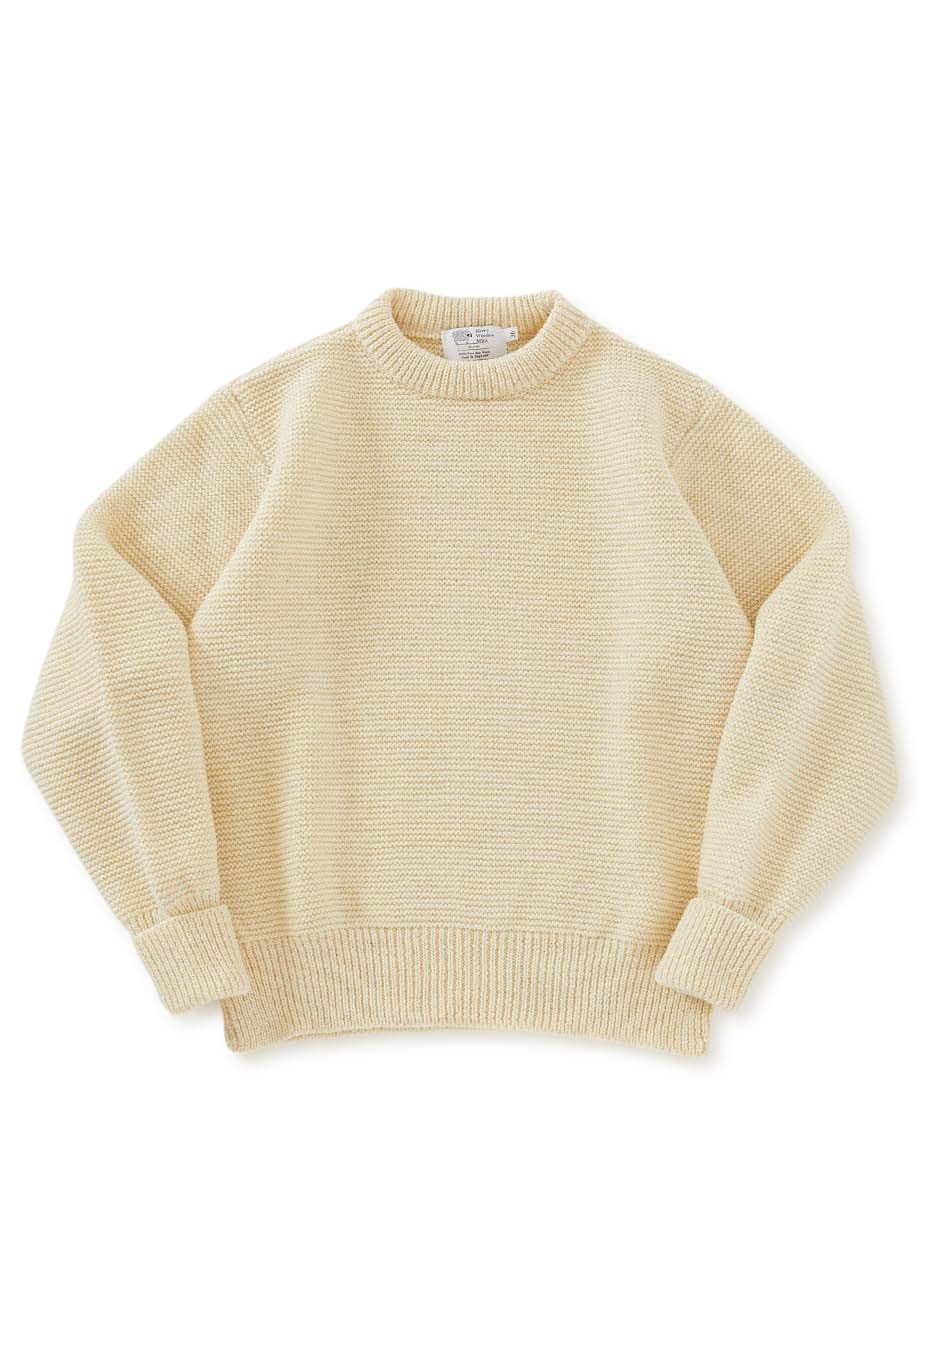 KERRY WOOLLEN MILLS Pearl stitch Drop Shoulder Sweater /MULTI